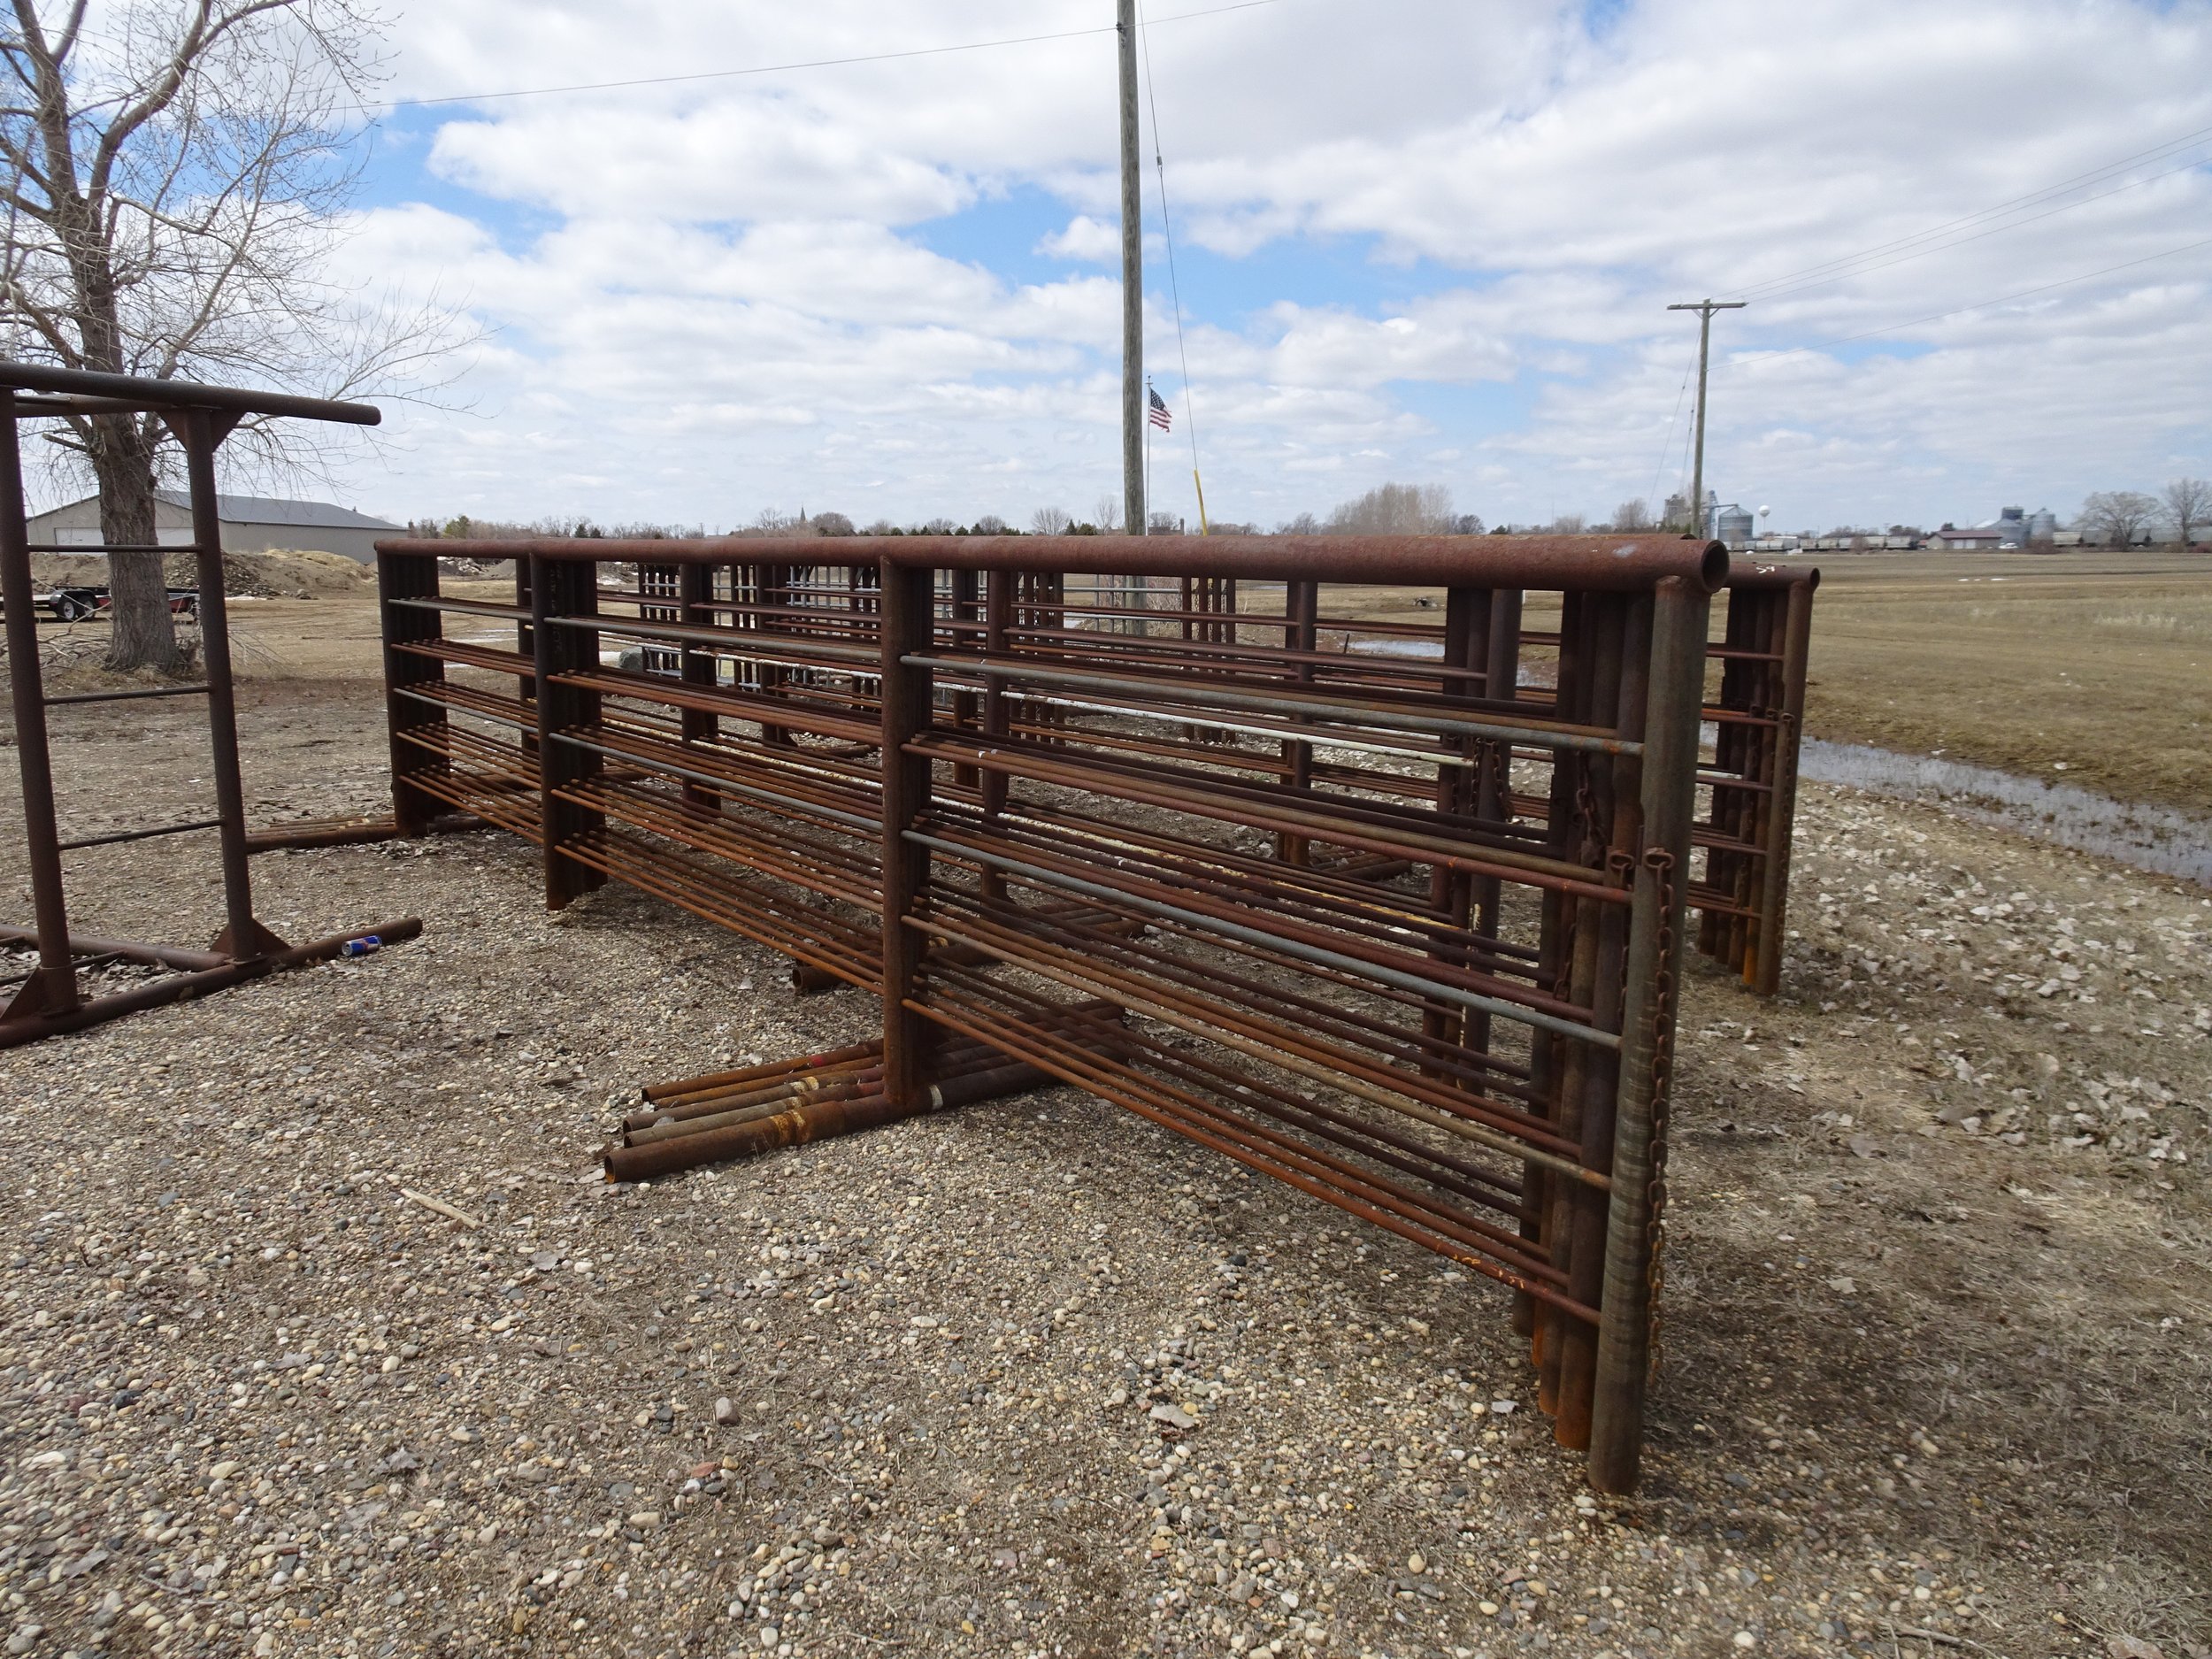 New/Unused livestock panels